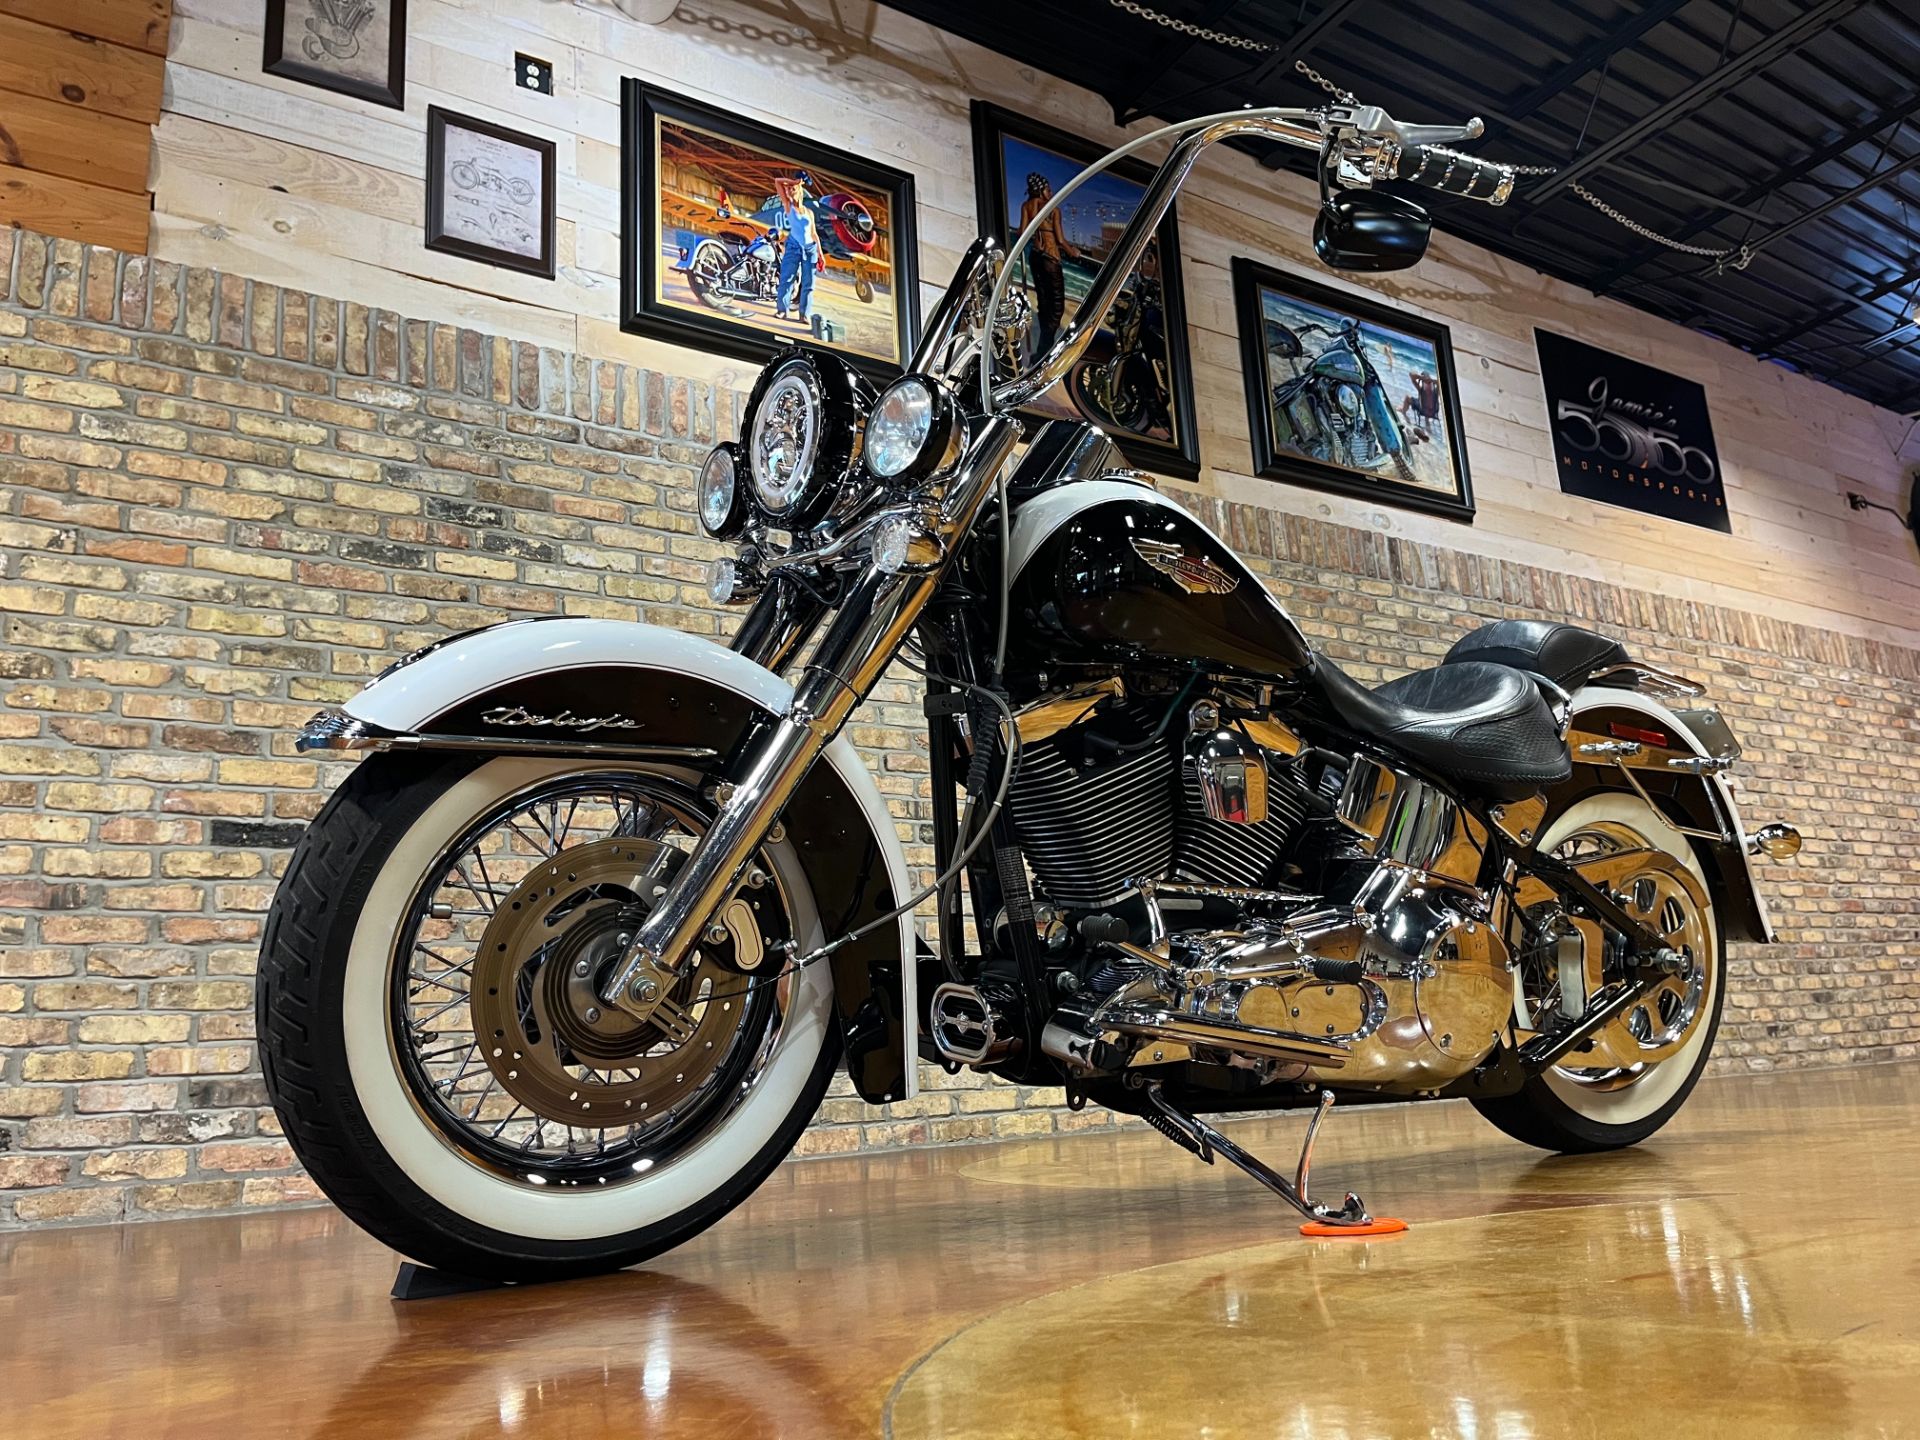 2005 Harley-Davidson FLSTN/FLSTNI Softail® Deluxe in Big Bend, Wisconsin - Photo 30